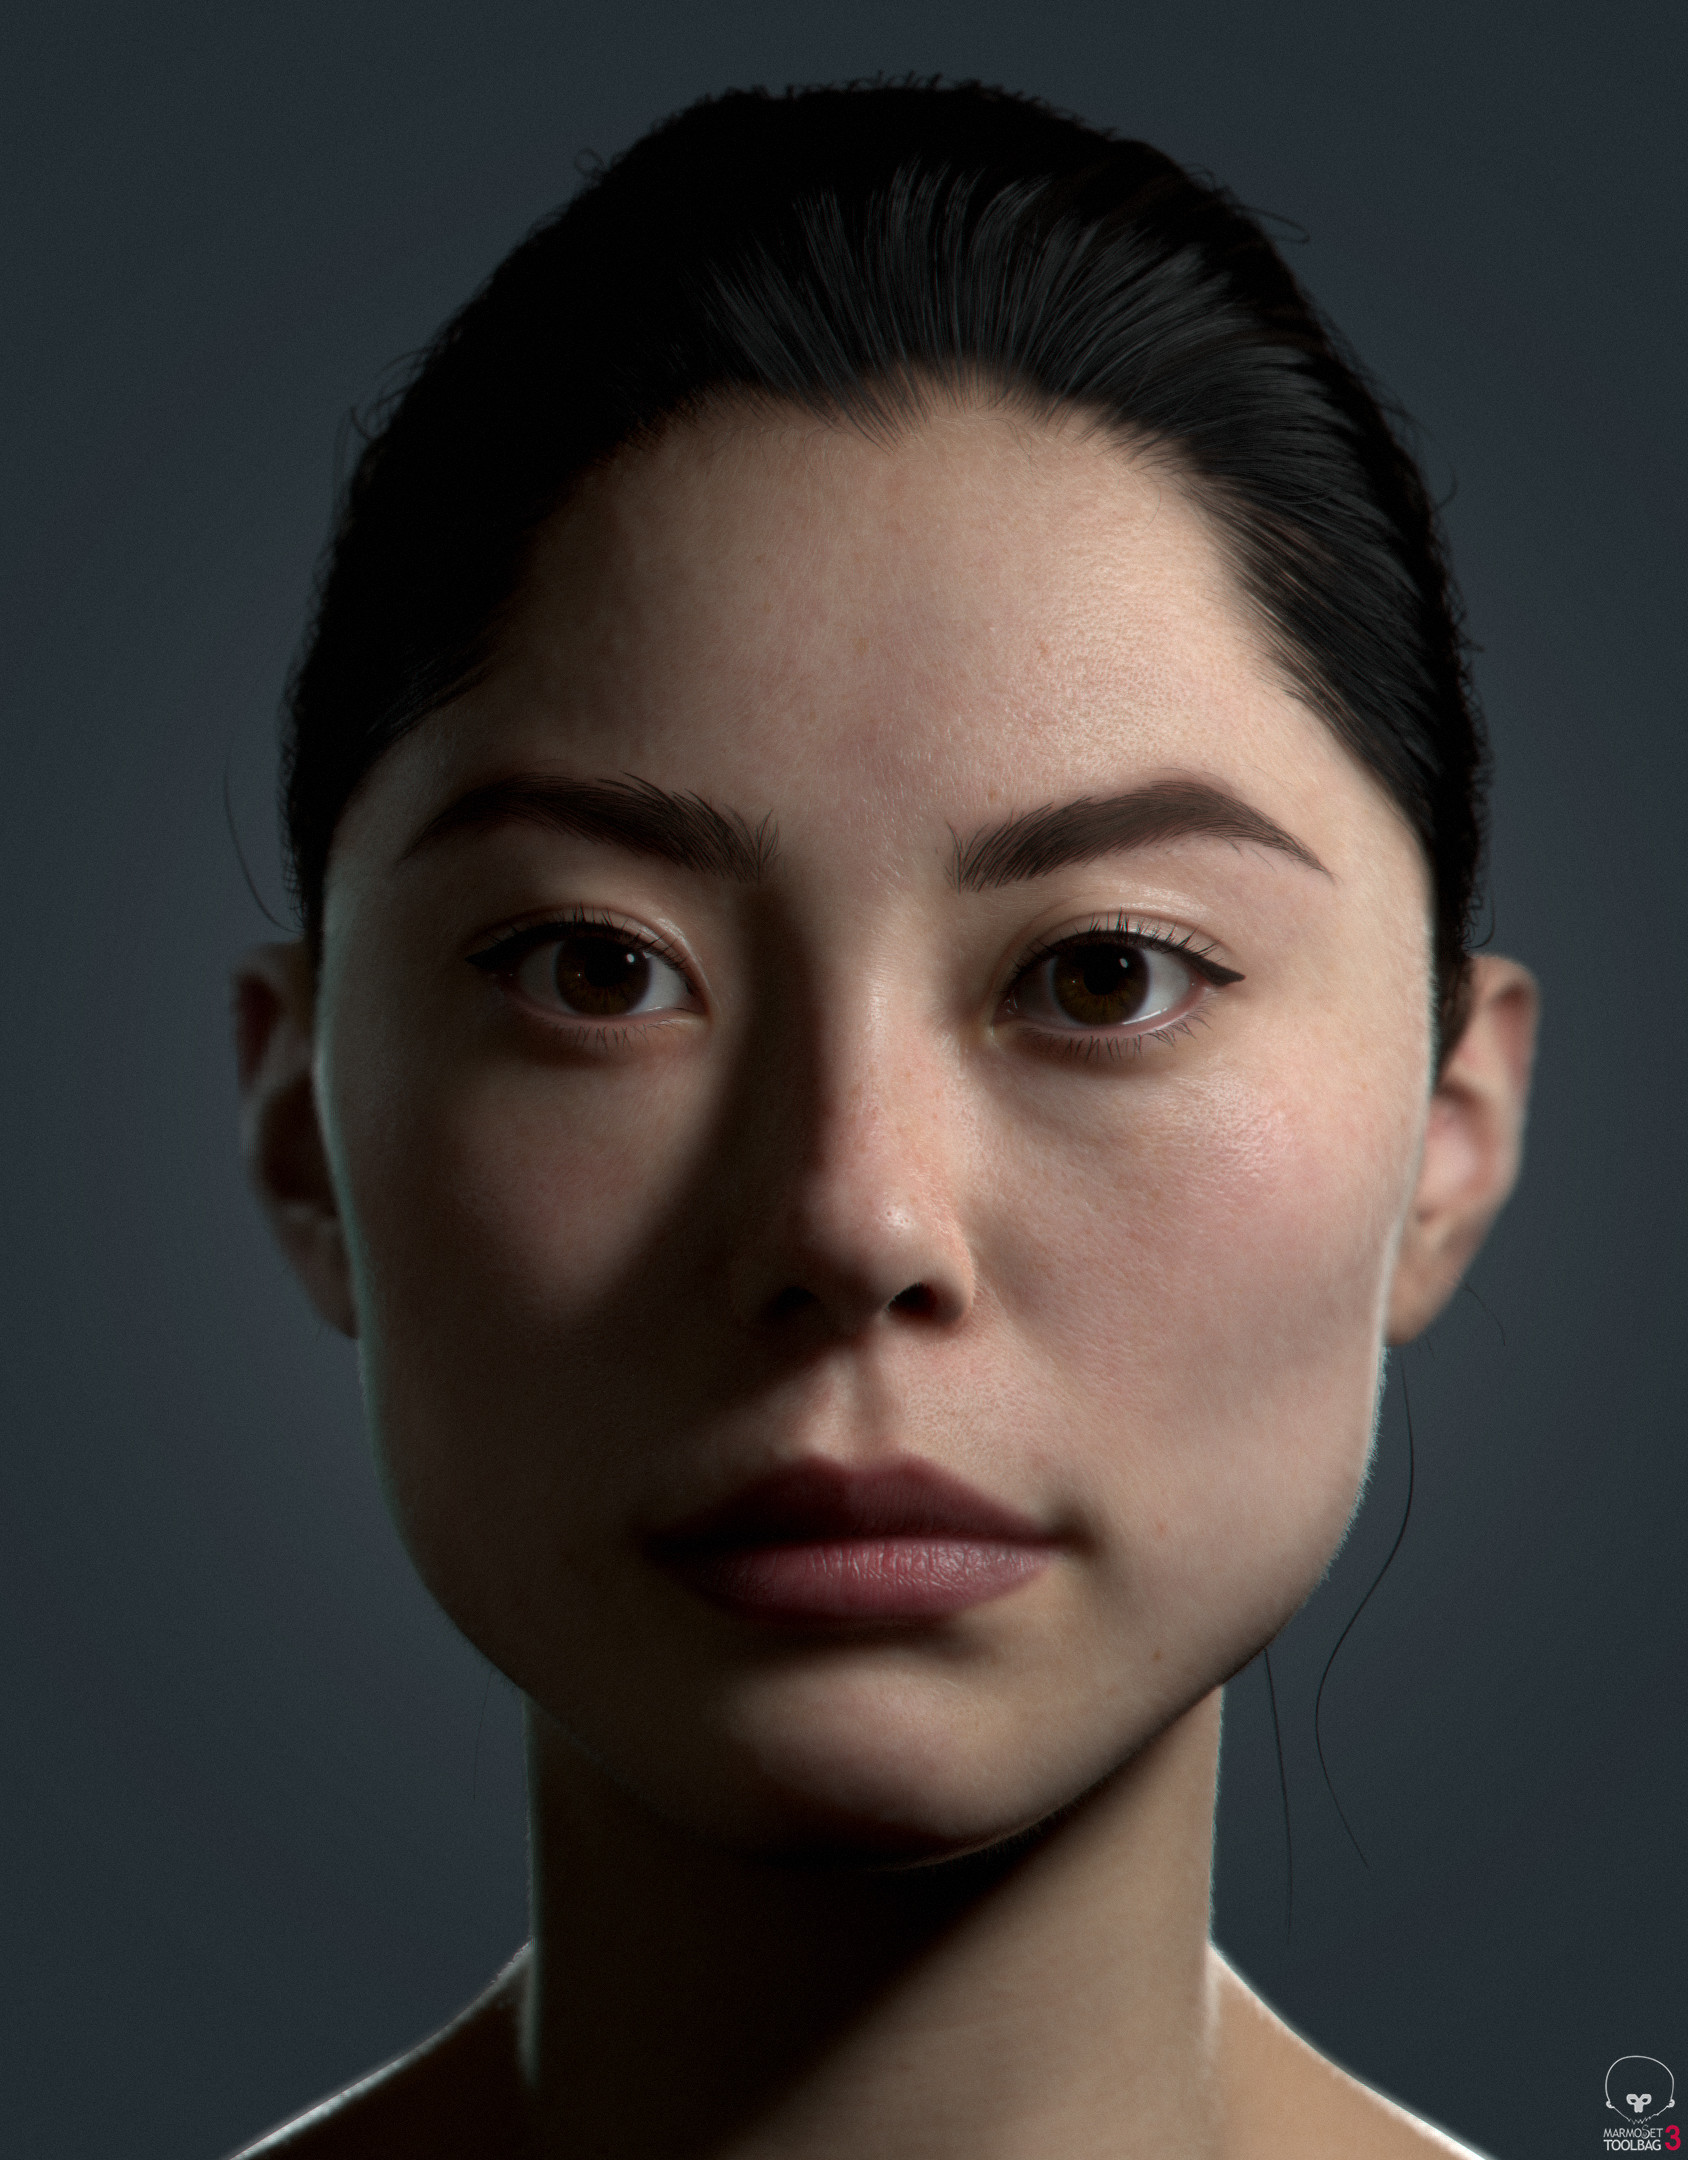 Реалистичная 3D визуализация портрета девушки